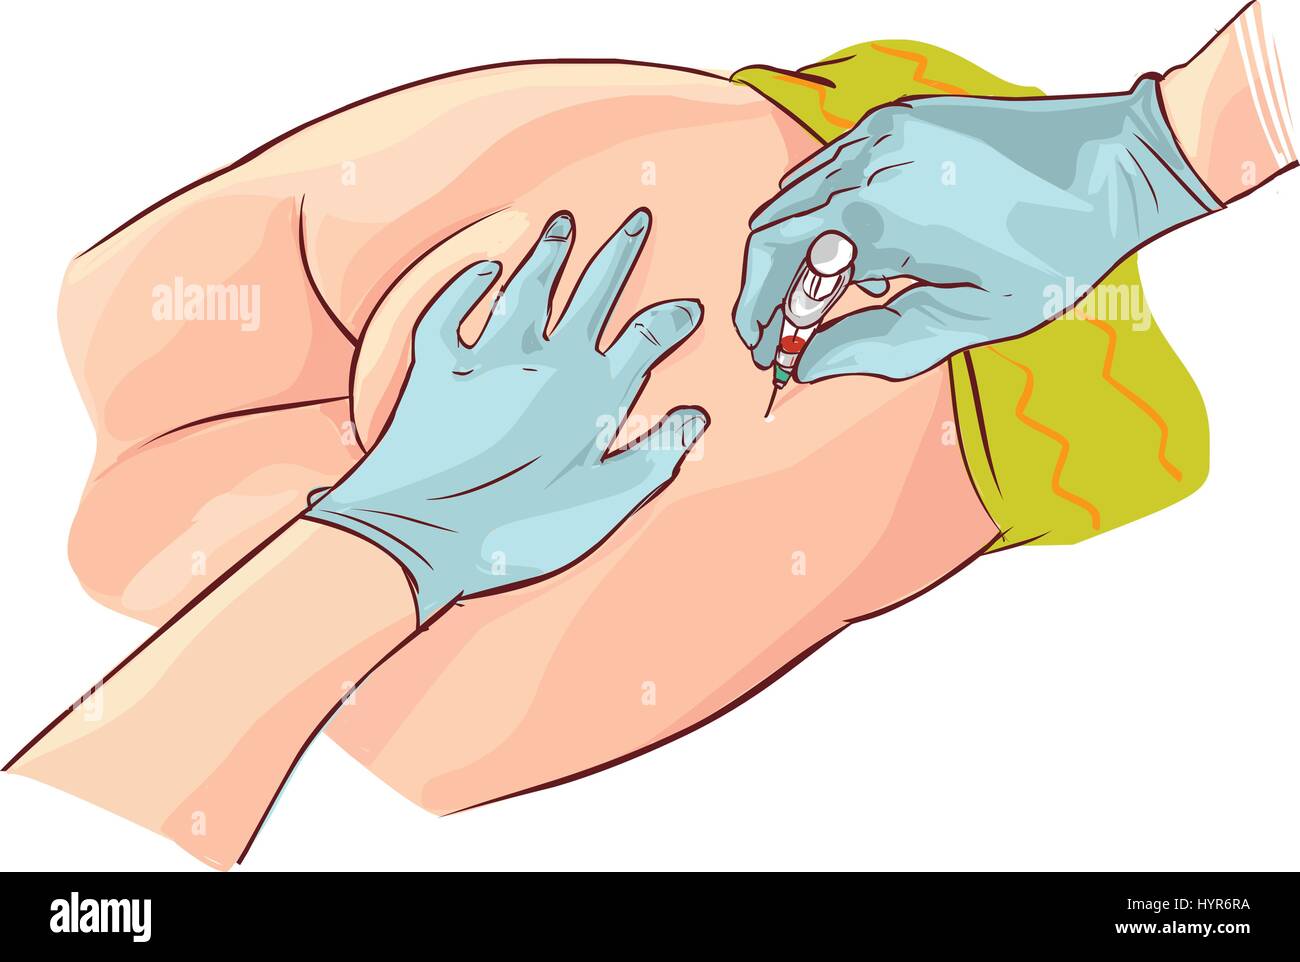 Dimensions de l'aspiration des mains gantées seringue à dorsogluteal site d'injection Illustration de Vecteur